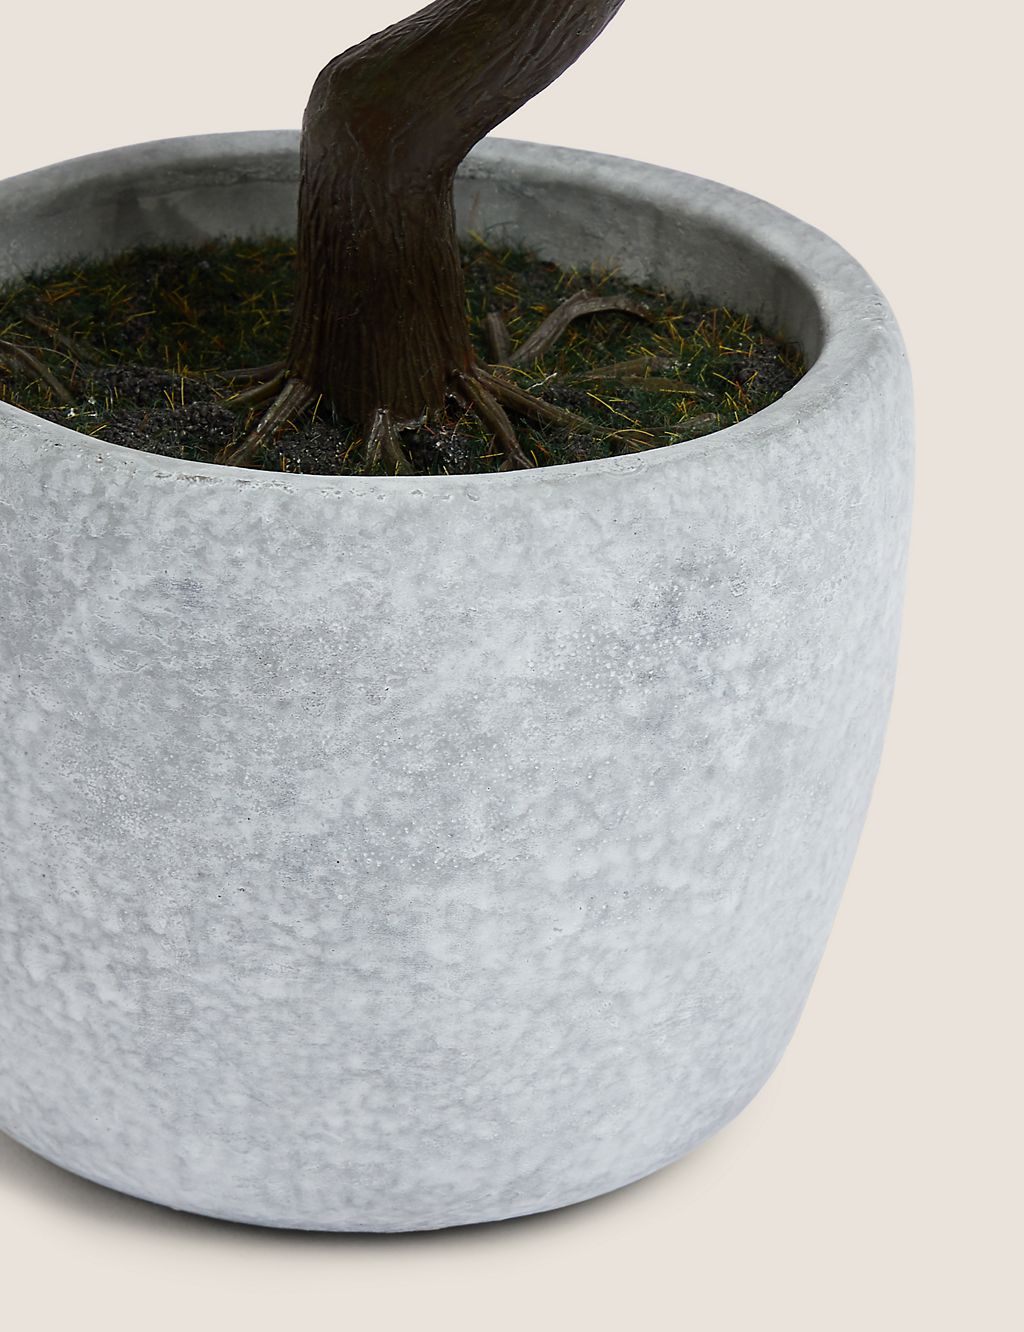 Artificial Bonsai Tree in Concrete Pot 1 of 4